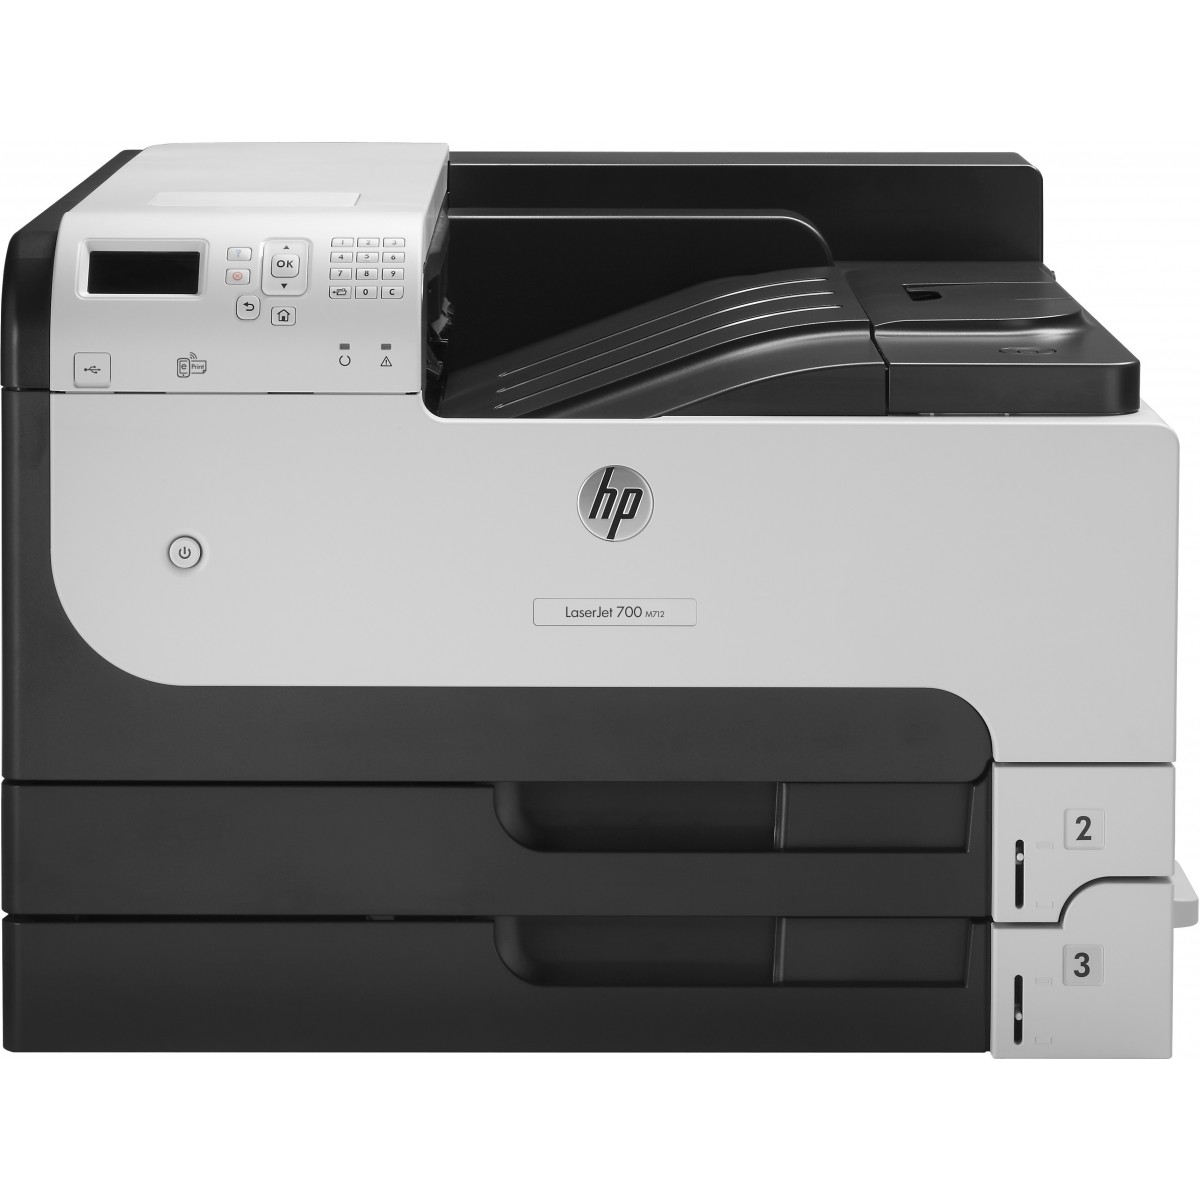 HP LaserJet Enterprise 700 Printer M712dn - Printer b/w Laser / Led - 1,200 dpi - 41 ppm